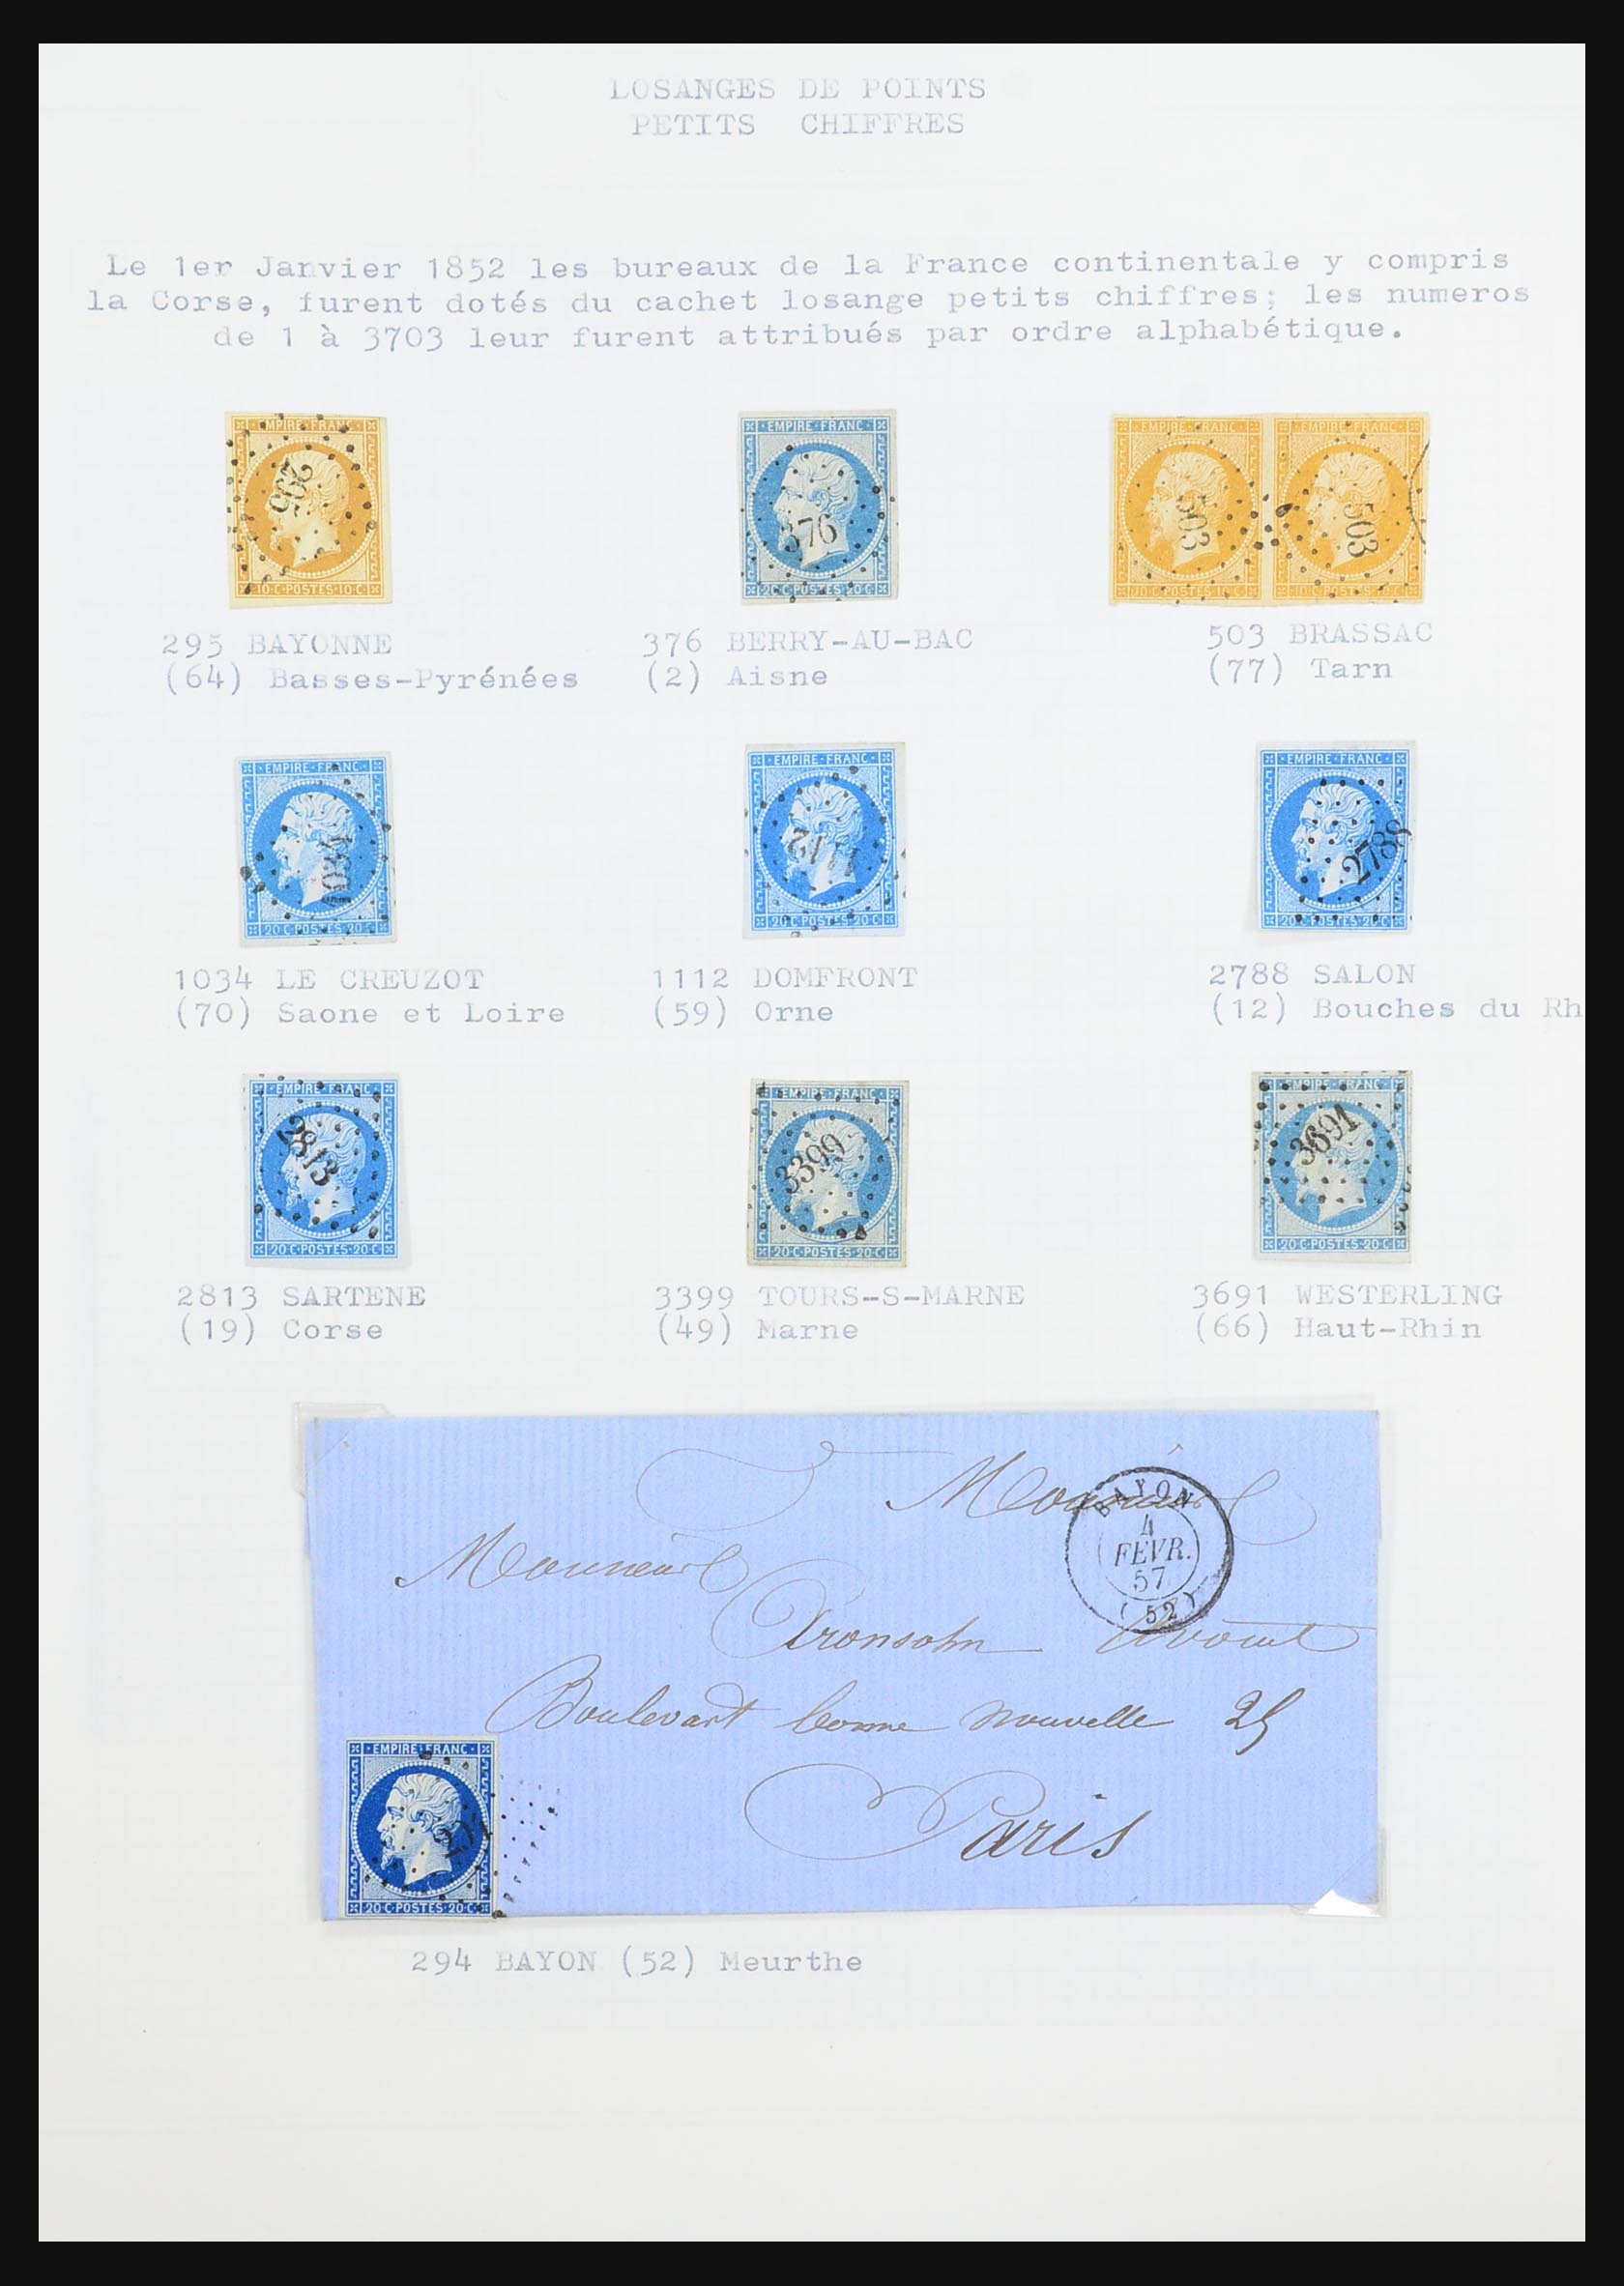 31526 032 - 31526 Frankrijk brieven en stempels 1725 (!)-1900.